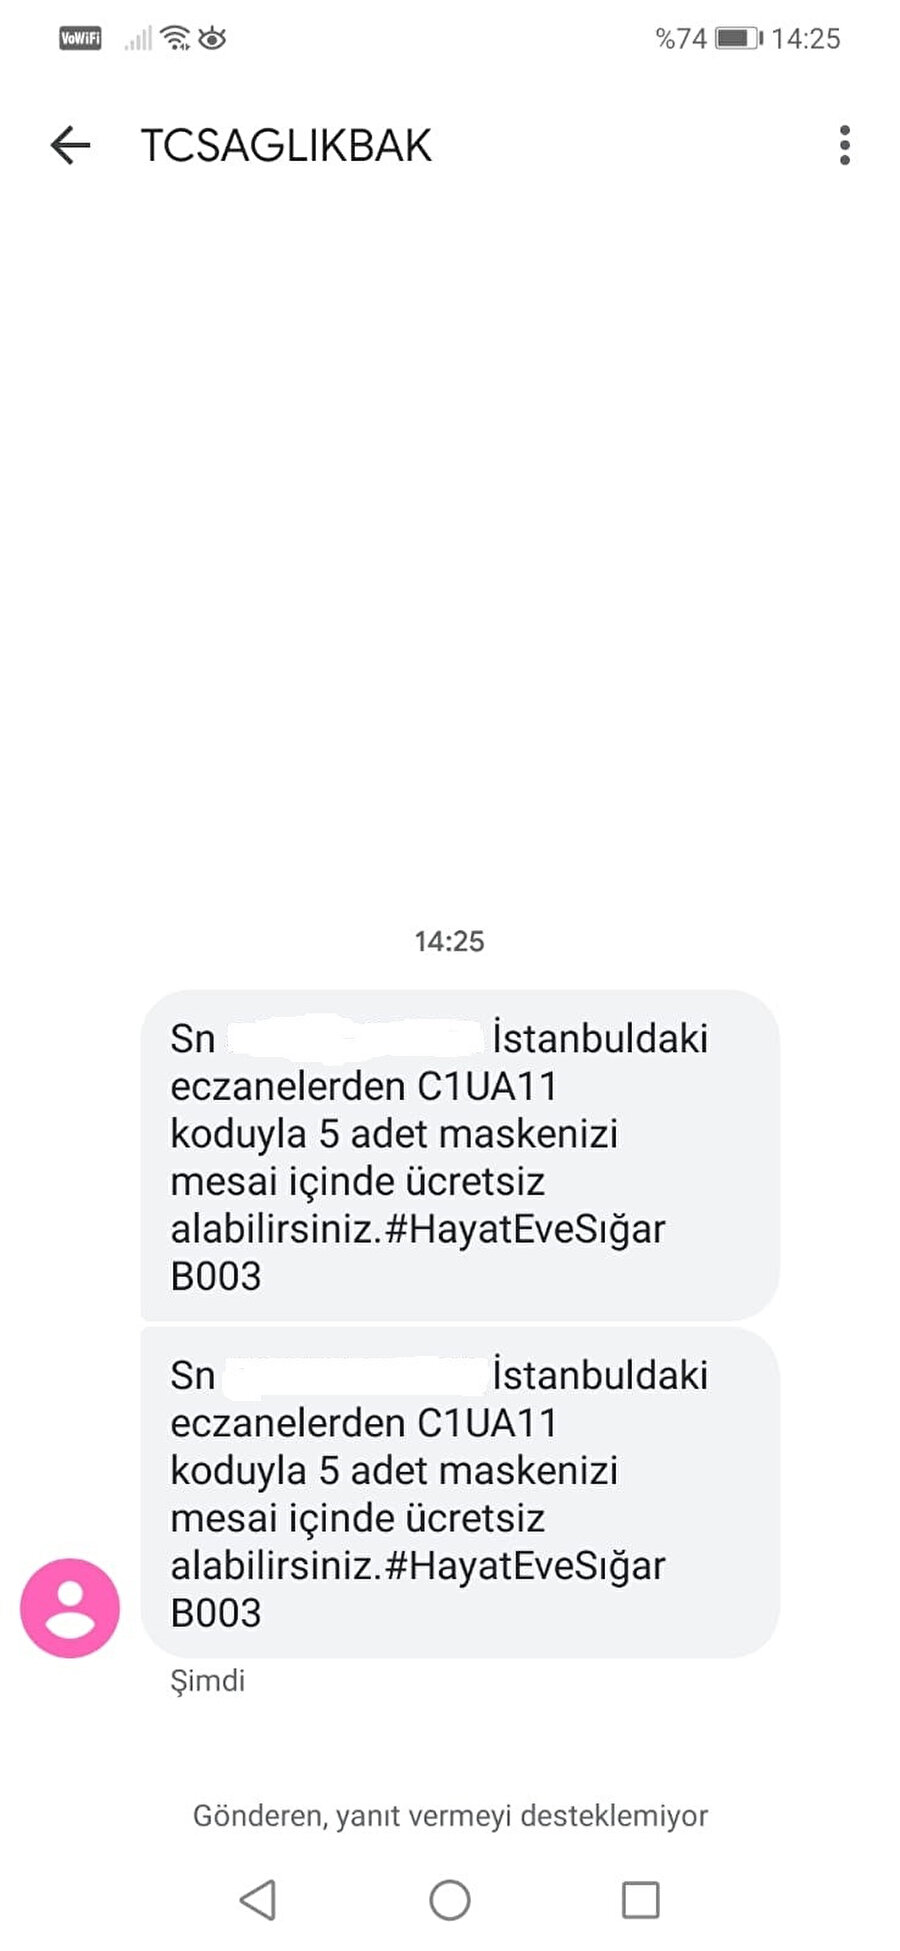 İstanbullulara gönderilen mesajlar